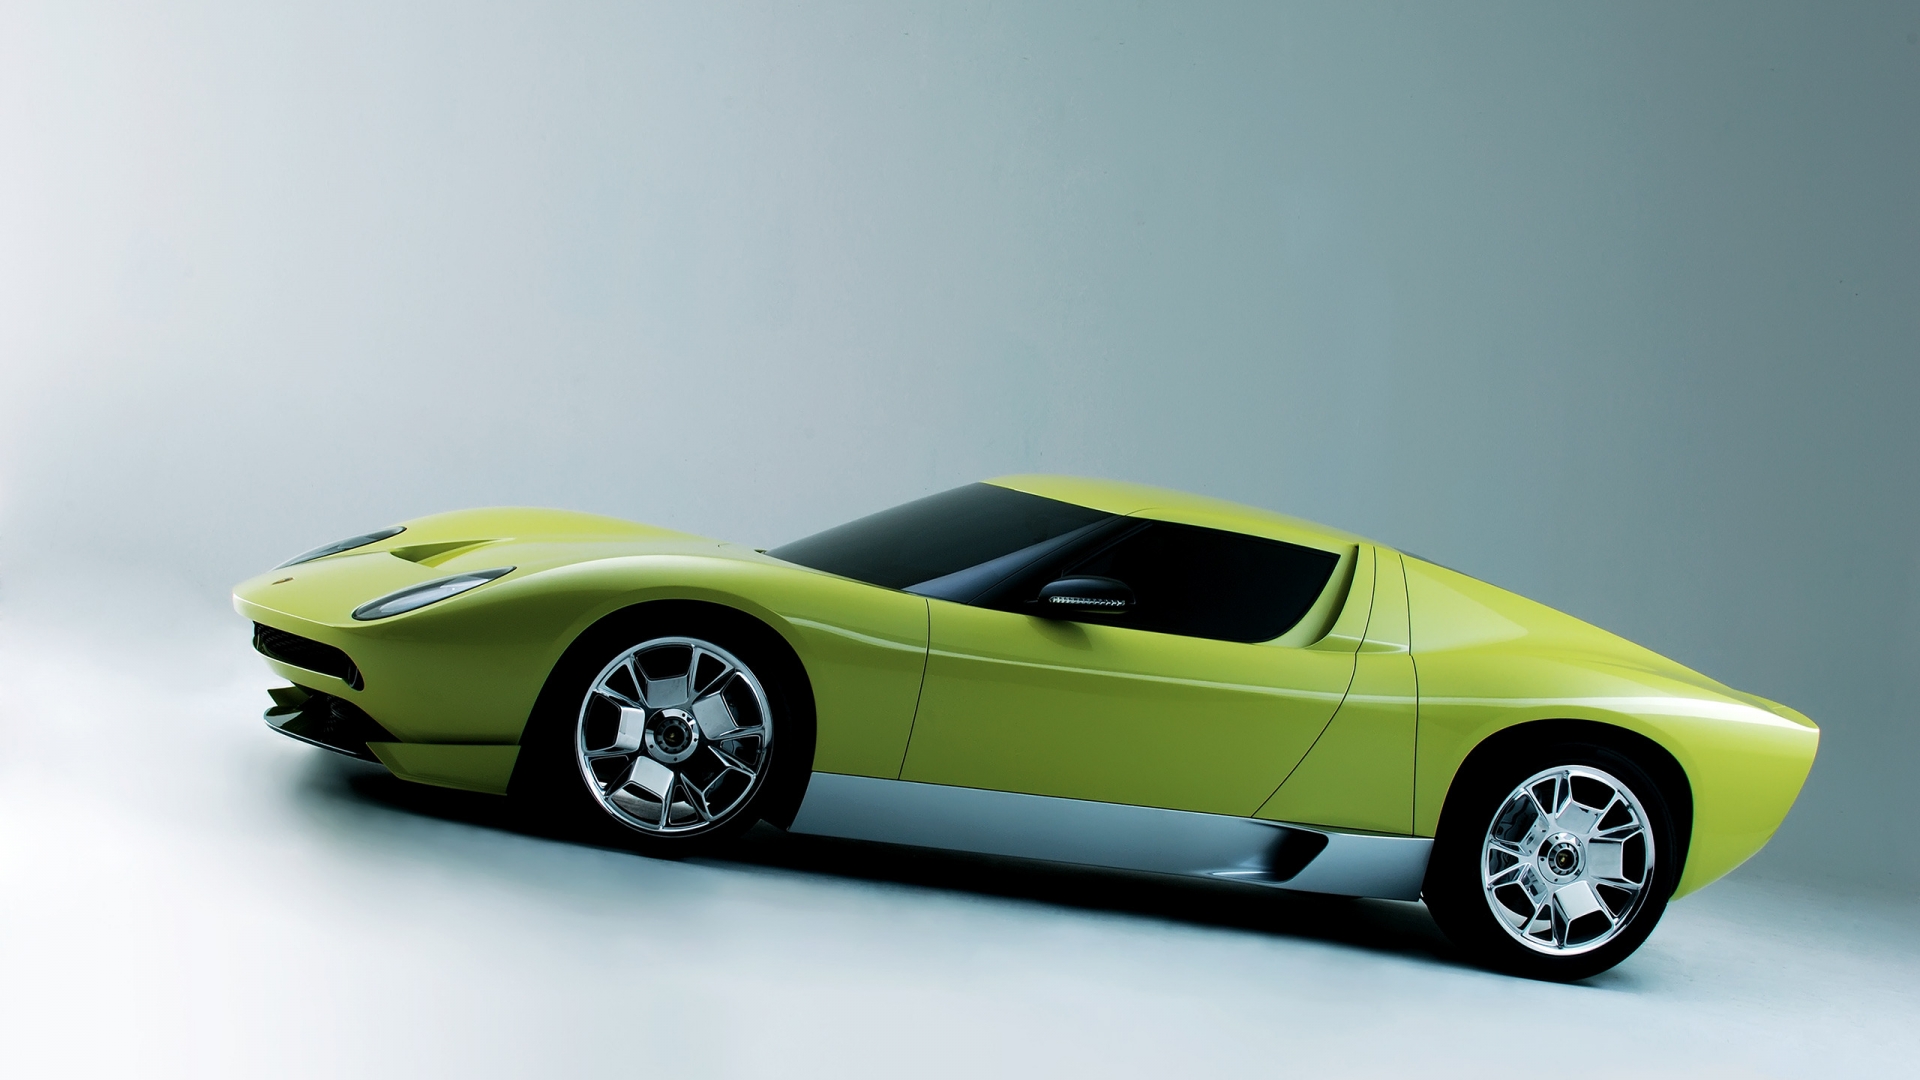 Lamborghini Miura Concept Side for 1920 x 1080 HDTV 1080p resolution